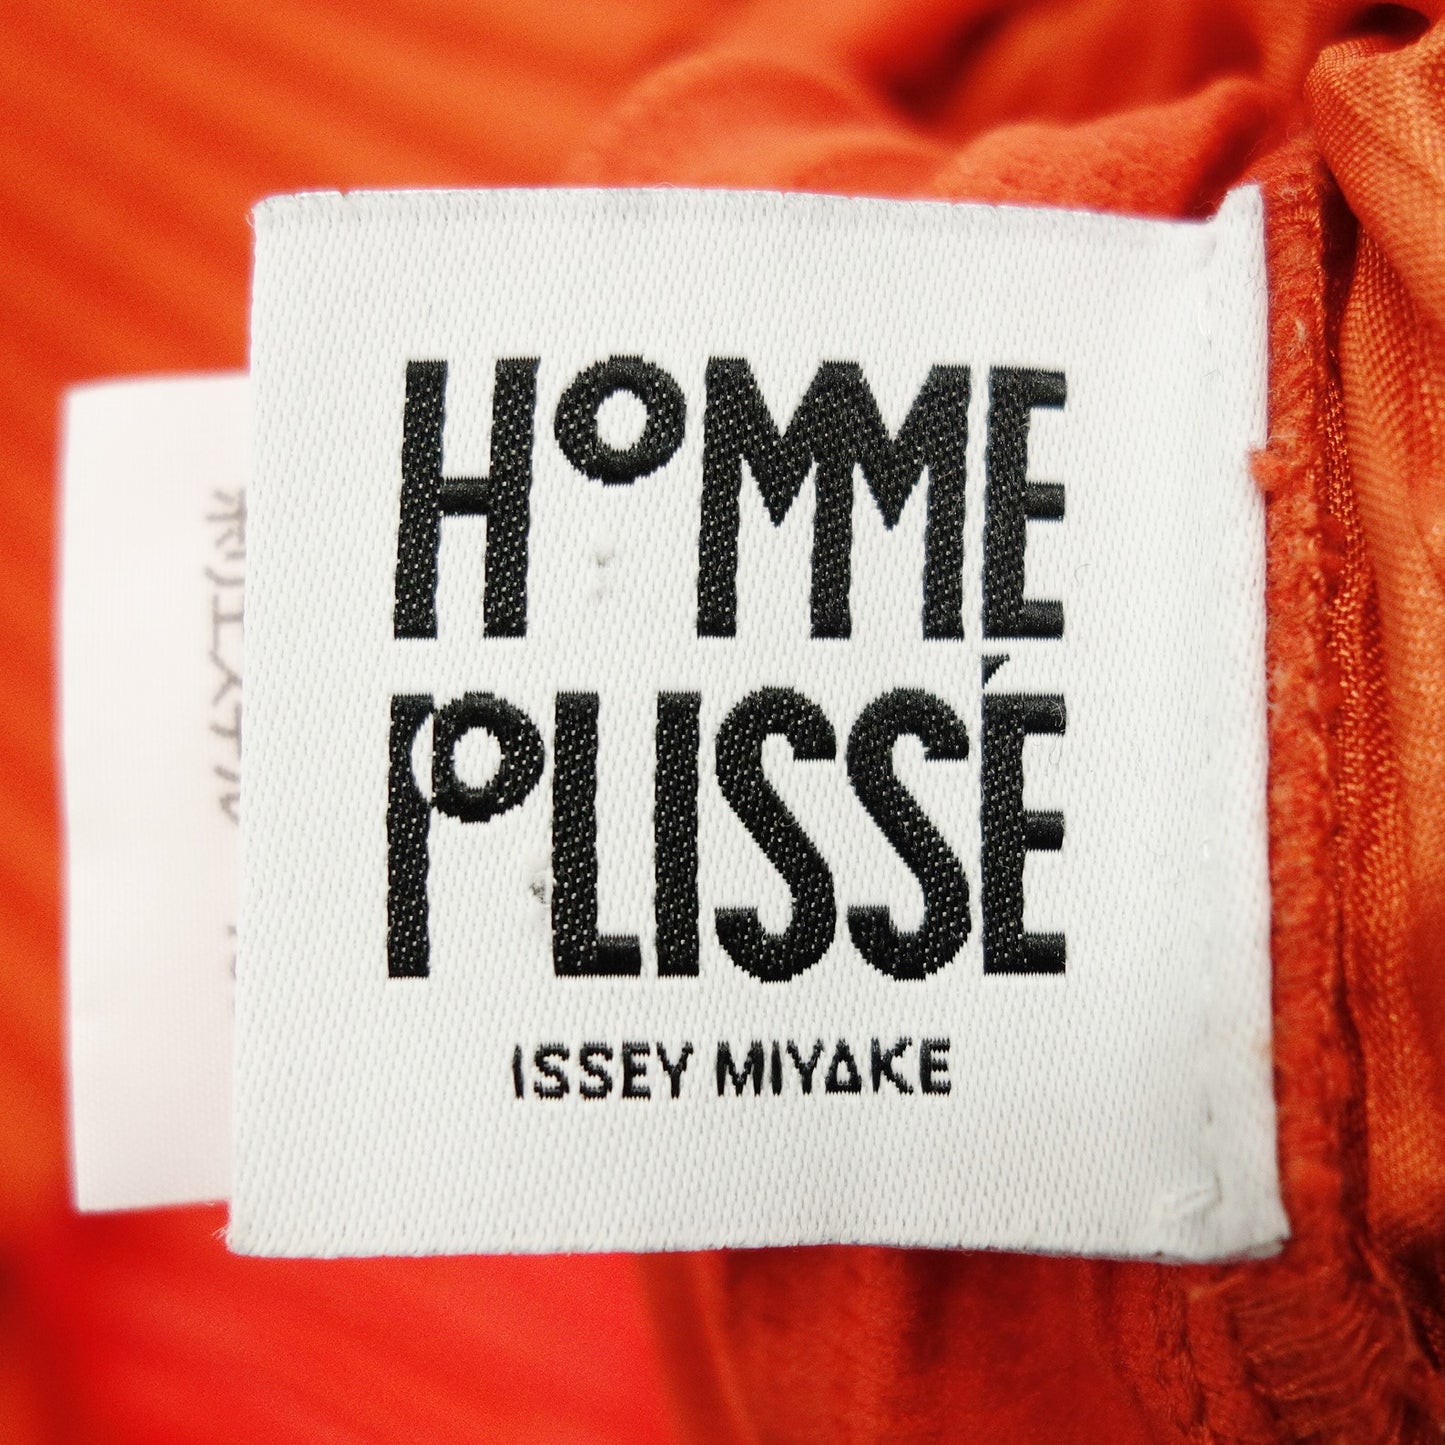 品相良好◆Issey Miyake Homme Plisse 开衫夹克褶裥 HP51JL105 男式 4 码橙色 ISSEY MIYAKE HOMME PLISSE [AFB30] 